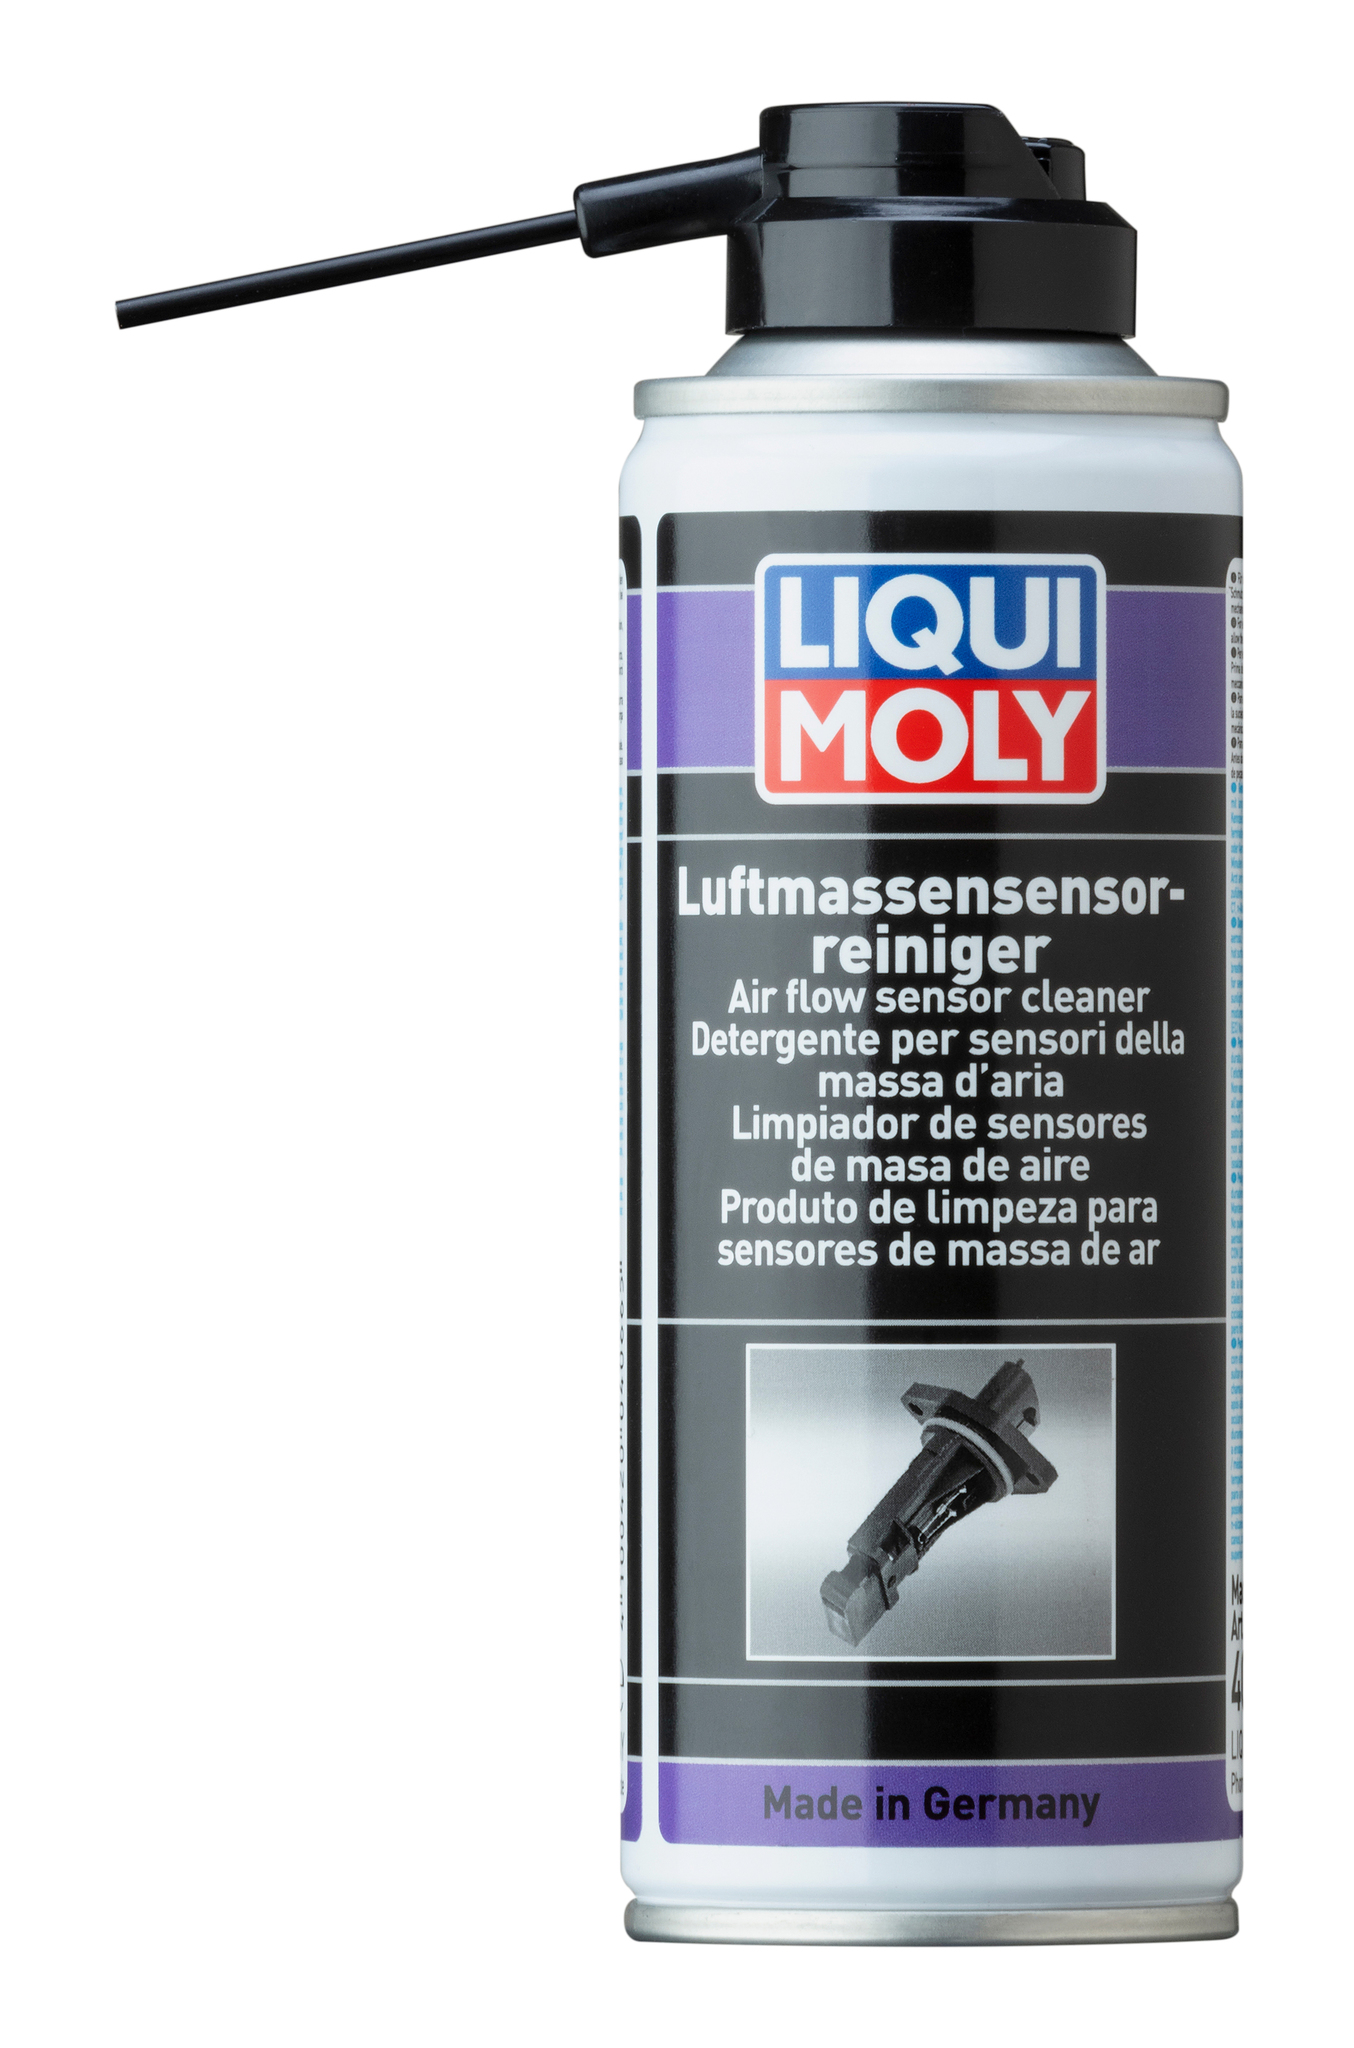 Liqui Moly Luftmassensensor Reiniger Очиститель ДМРВ (датчик расхода воздуха)